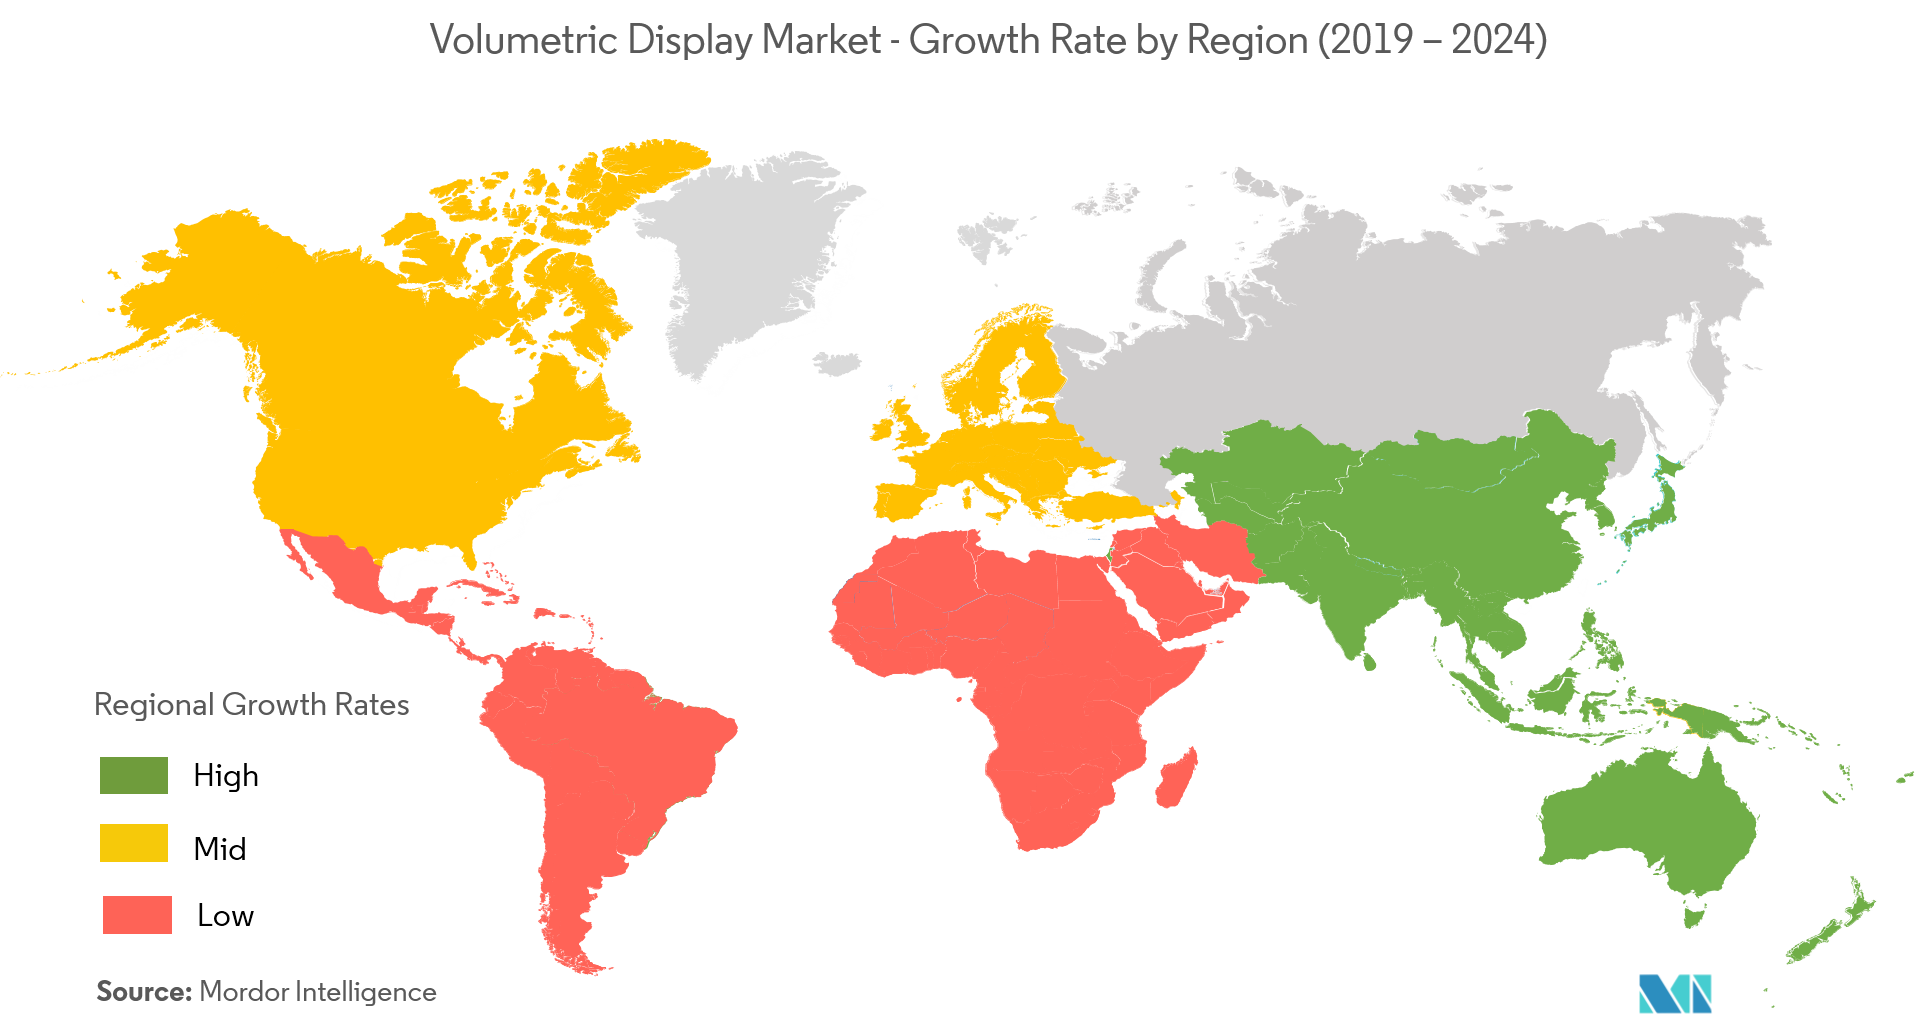 Marché de laffichage volumétrique  taux de croissance par région (2019-2024)